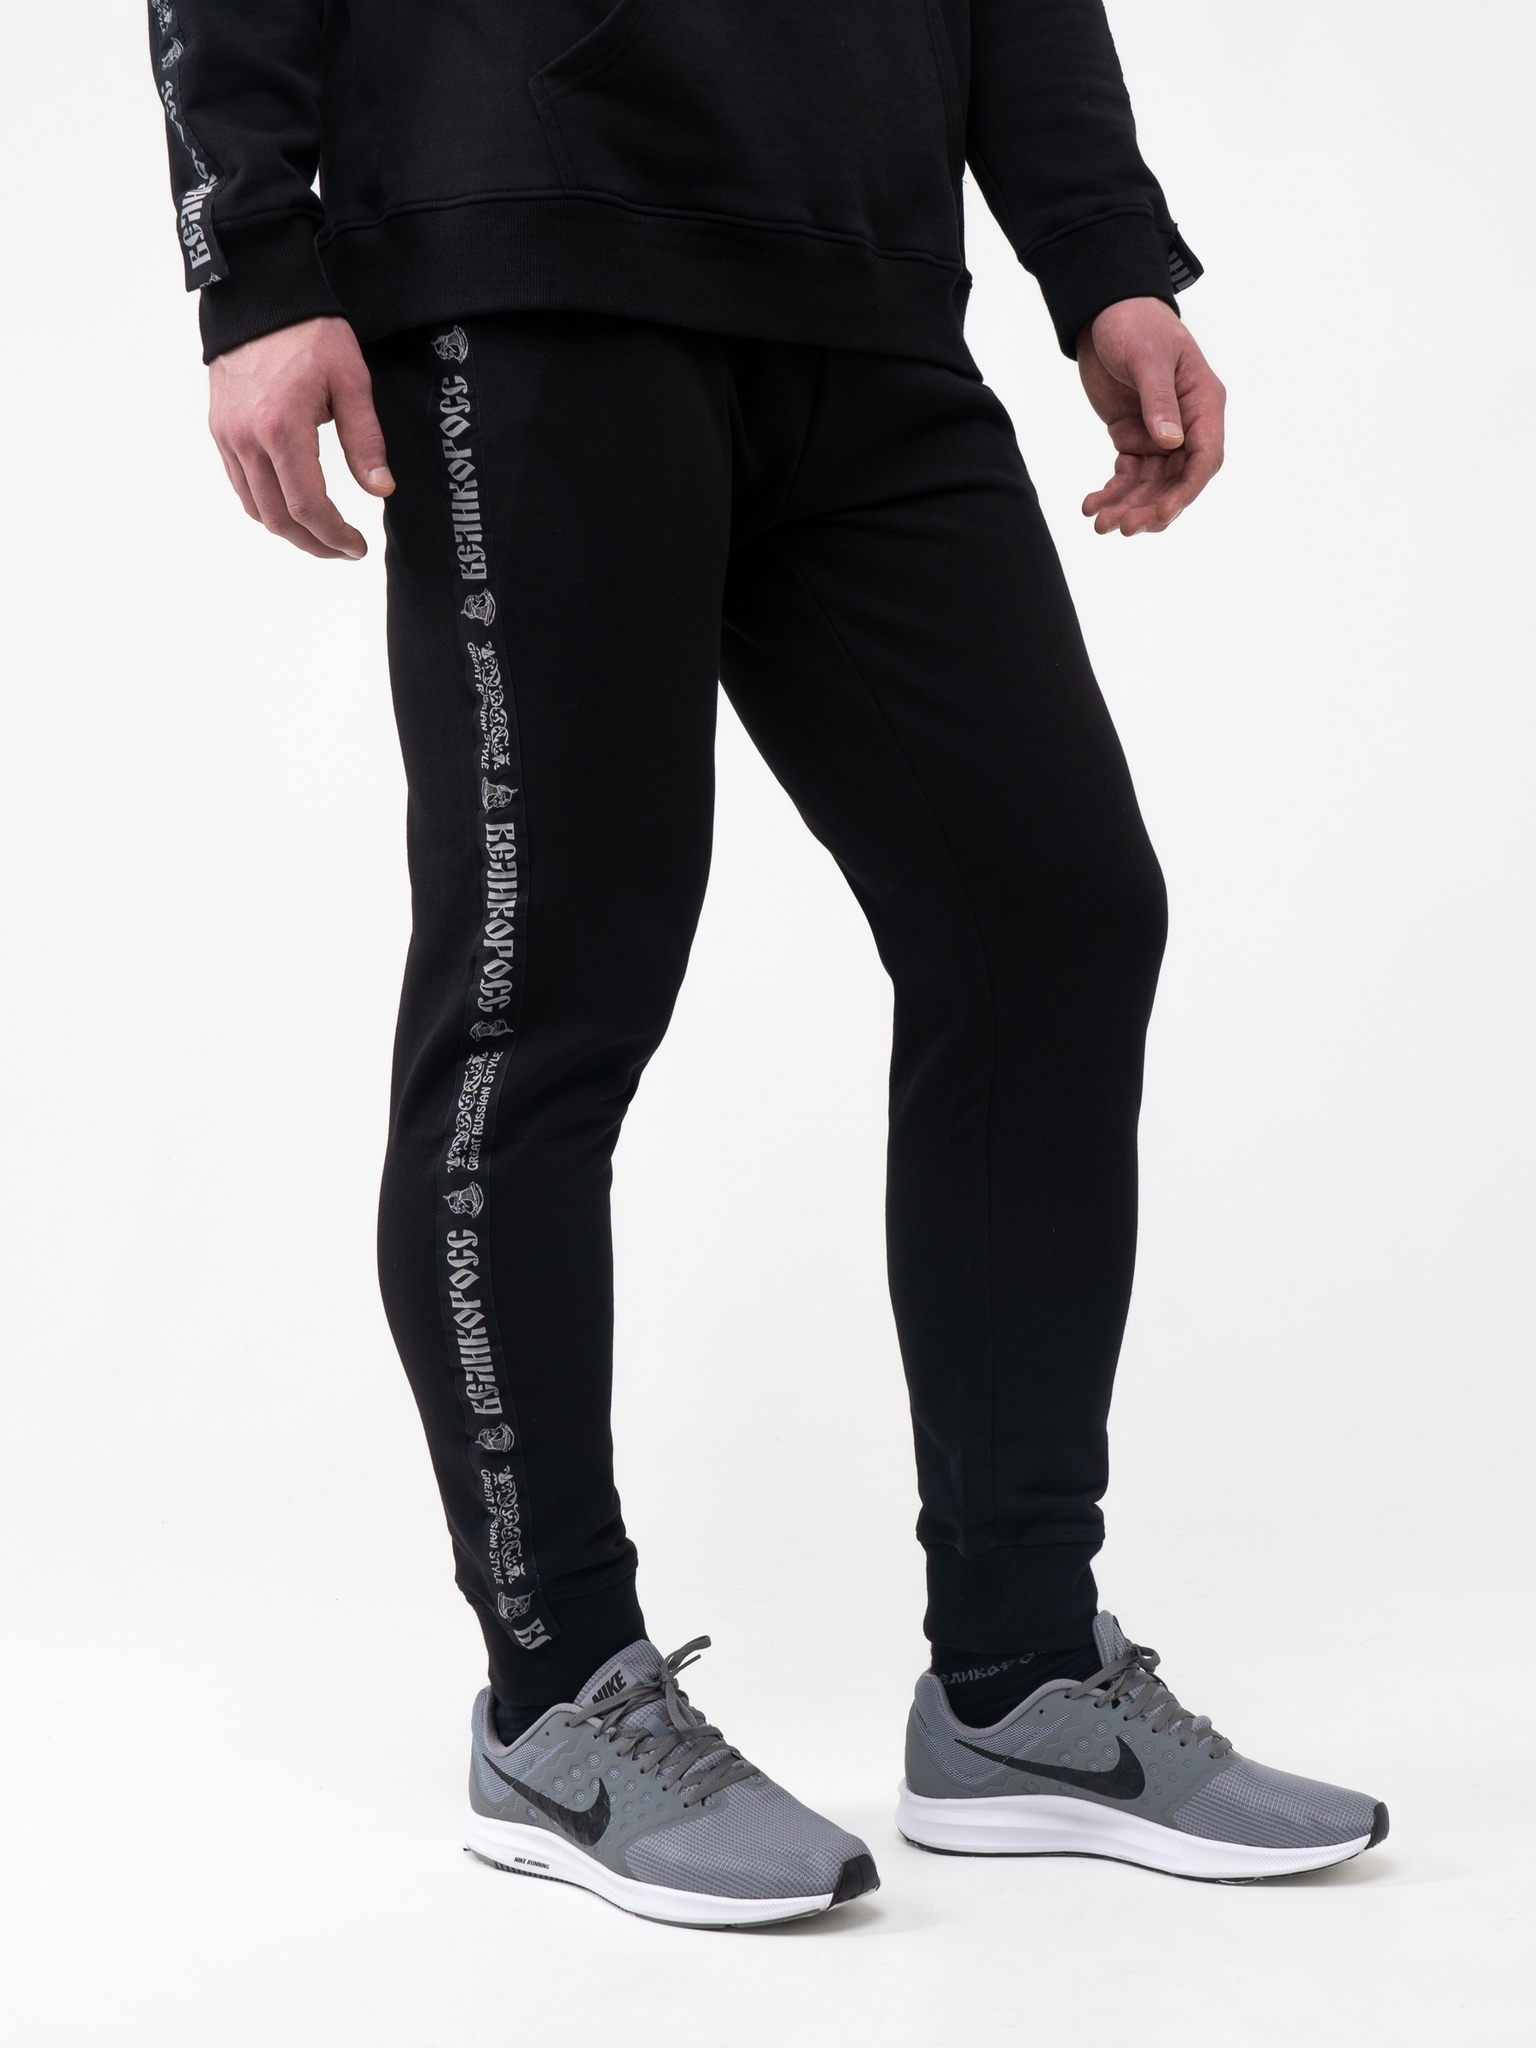 фото Спортивные брюки мужские великоросс bm черные 56 ru